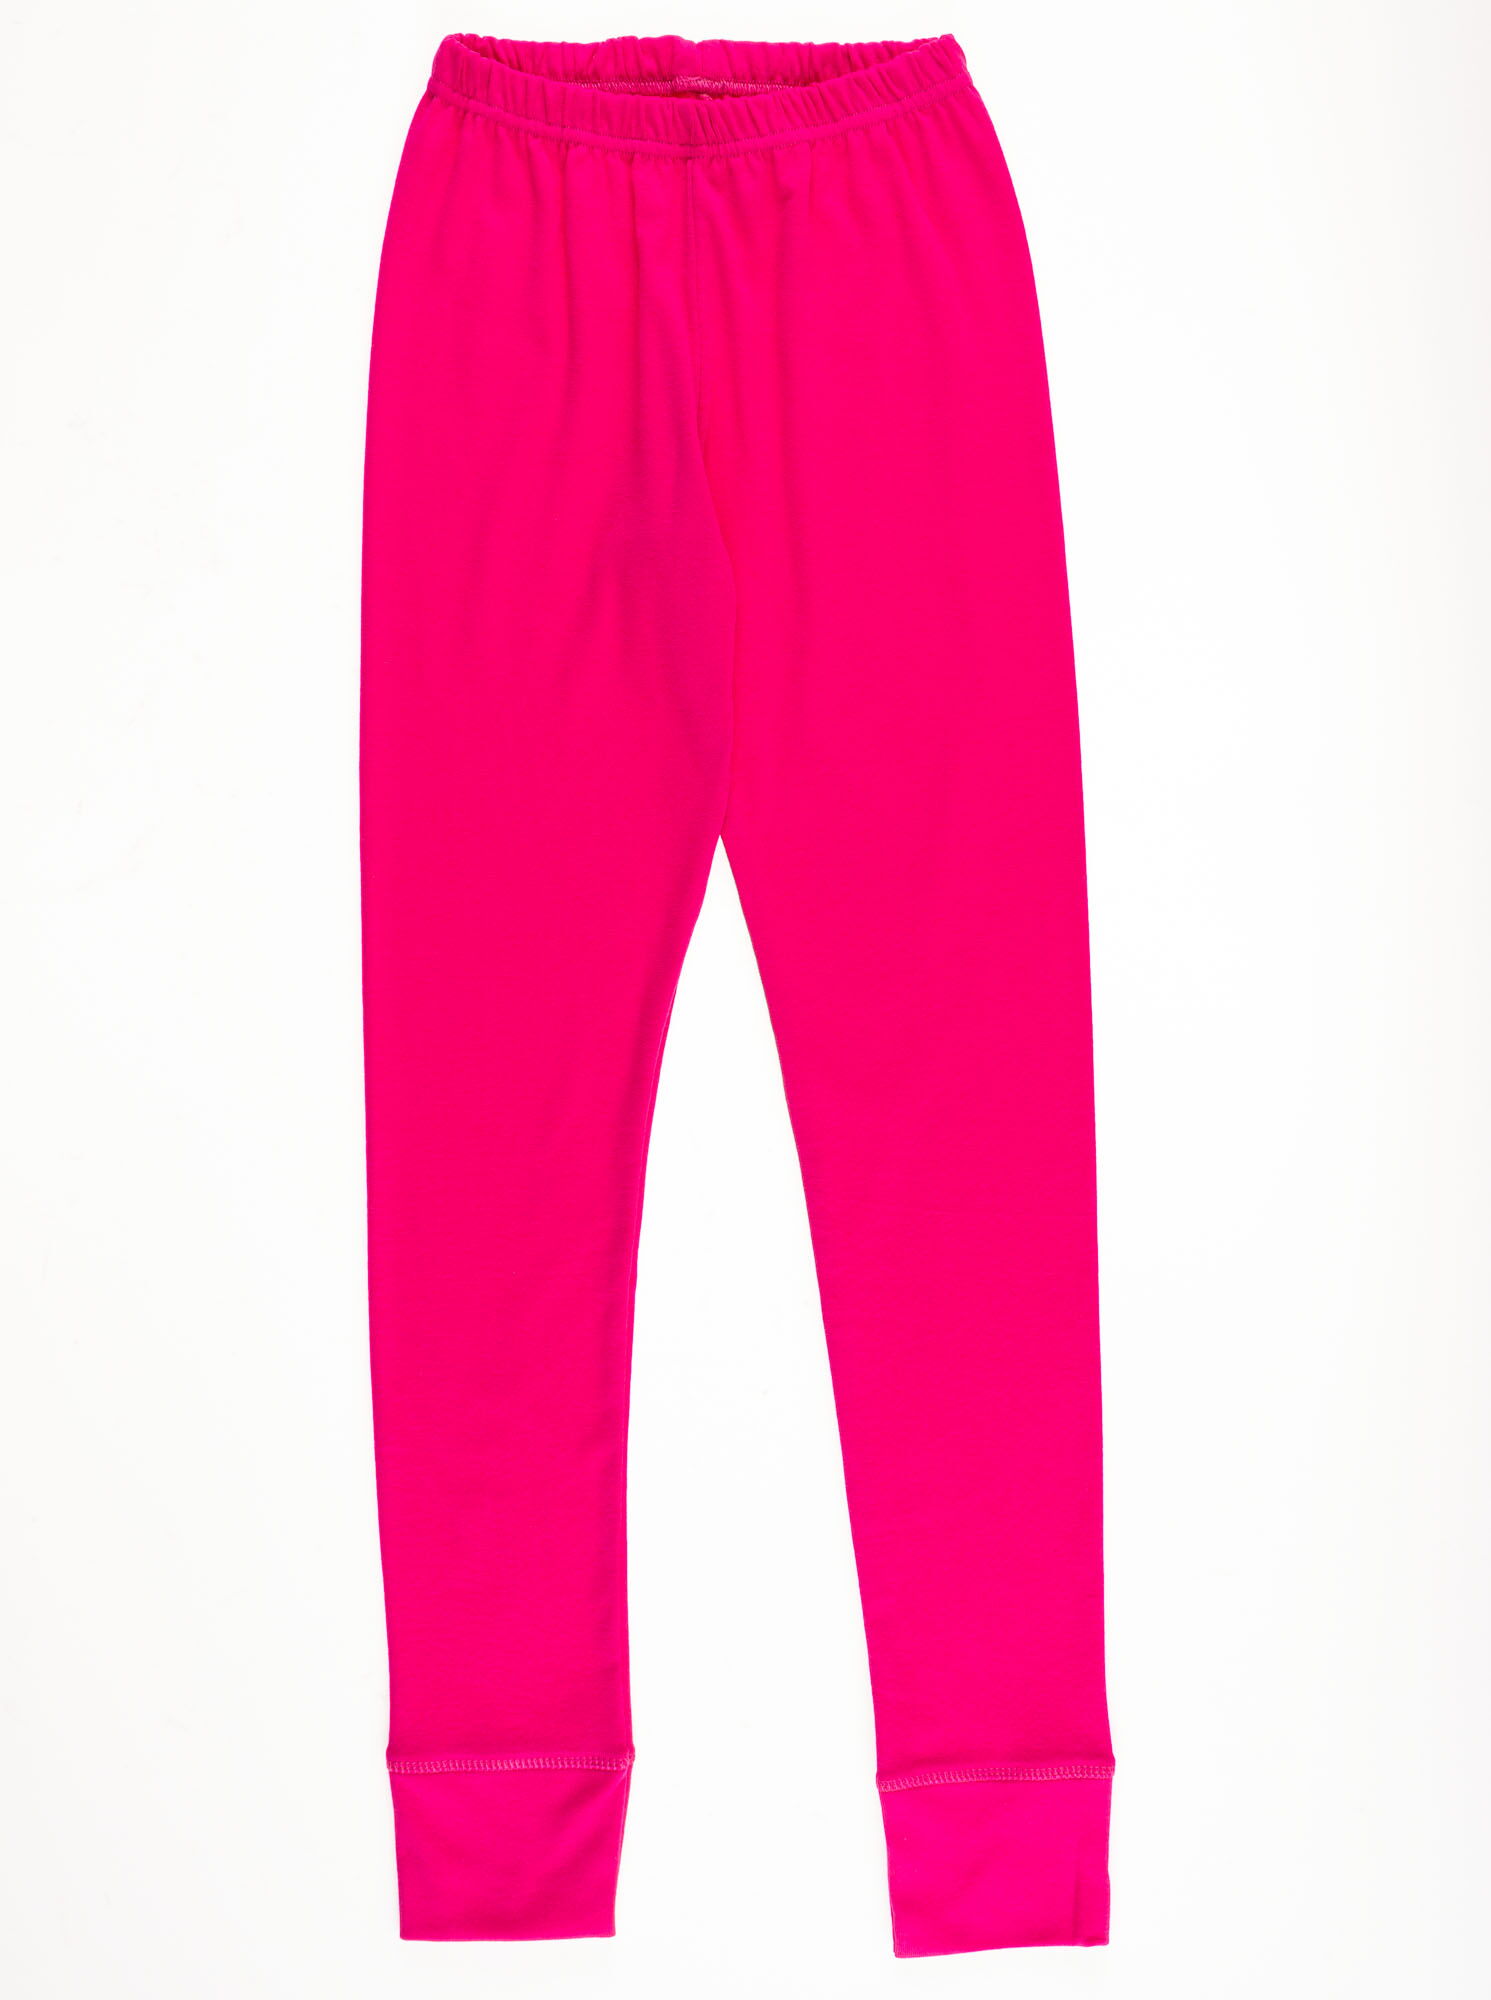 Пижама для девочки Фламинго розовая 282-1006 - купить